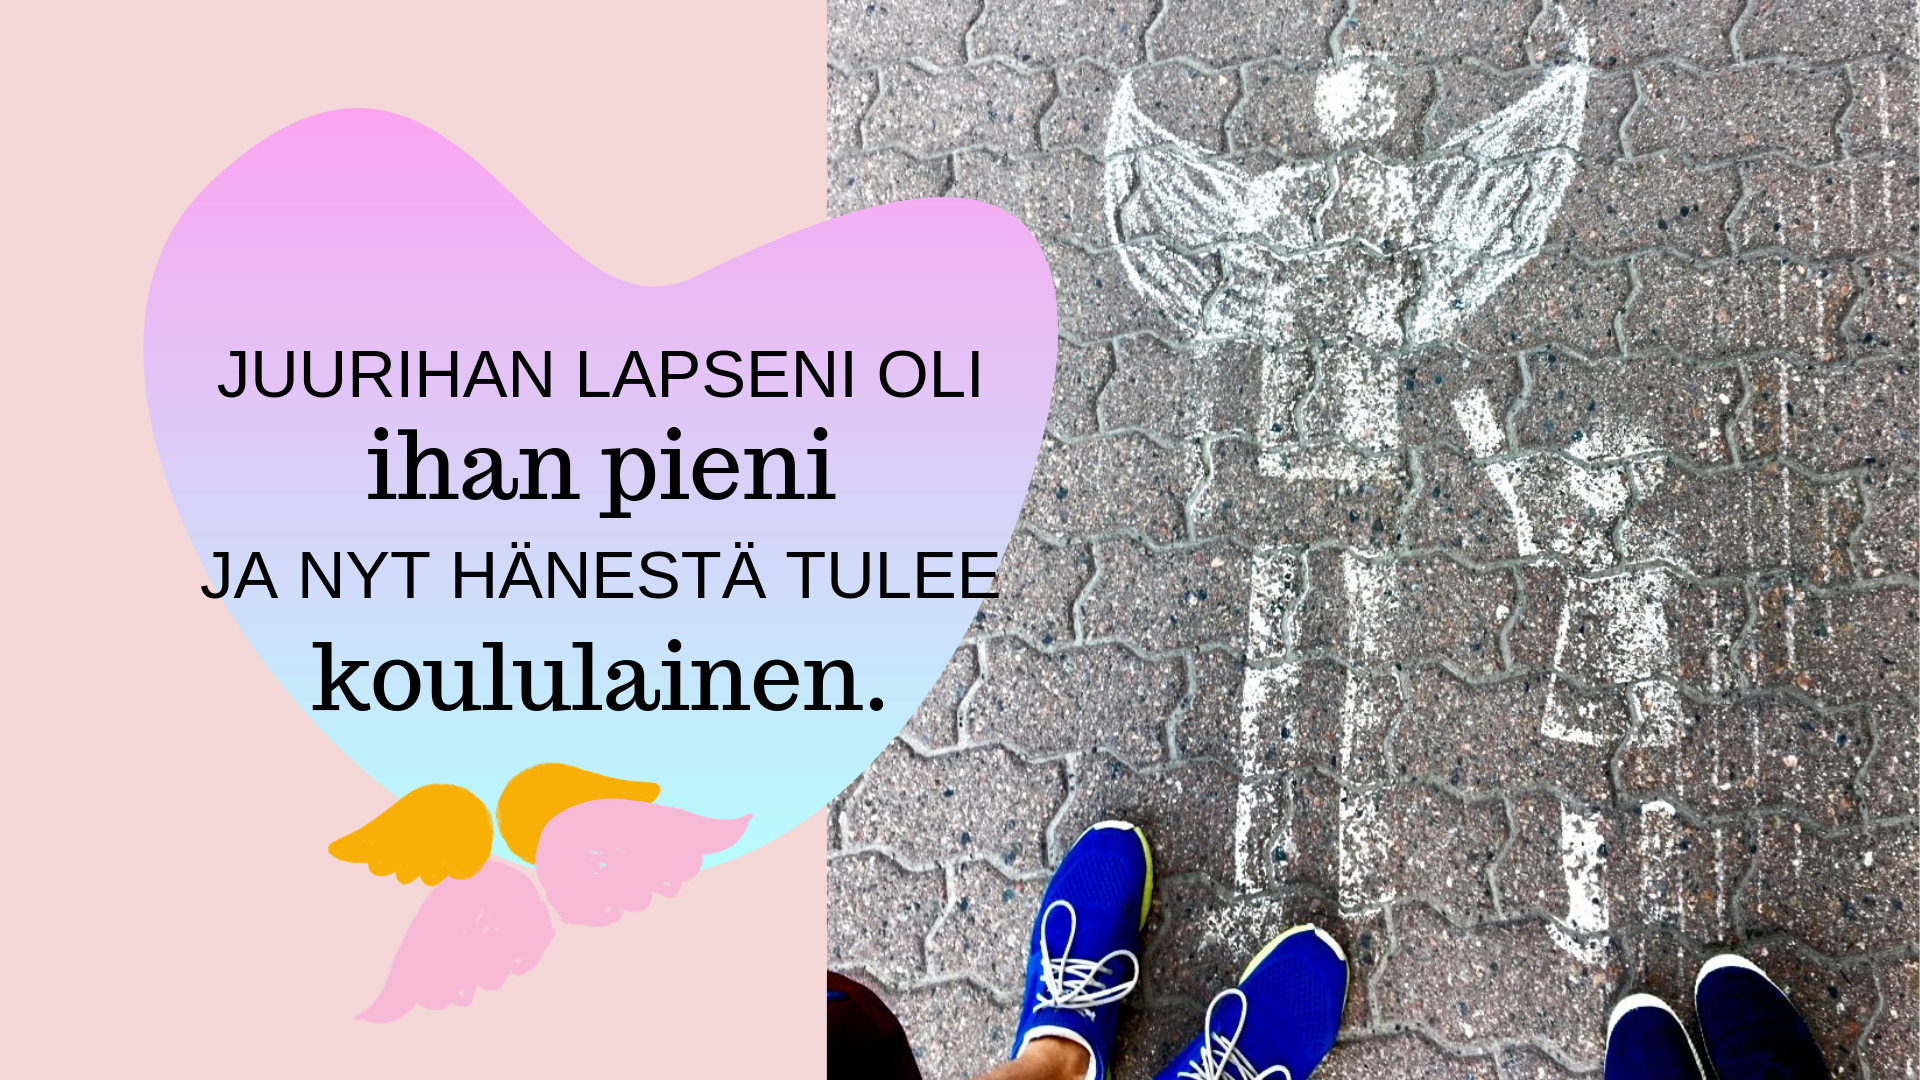 kuvassa asfalttia, enkeli ja lapsi ja teksti juurihan lapseni oli ihan pieni ja nyt hänestä tulee koululainen